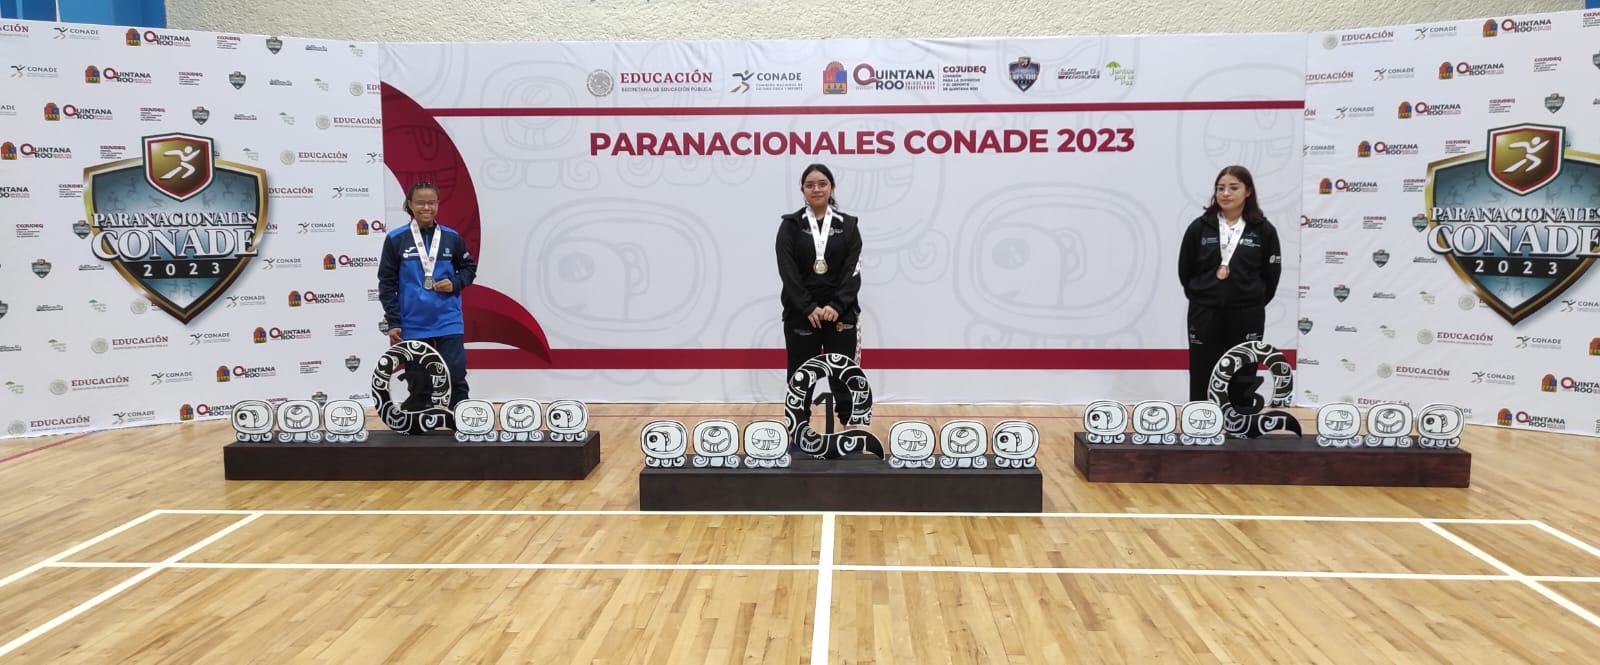 Chiapas inicia con 5 medallas de oro y 2 de plata los Paranacionales Conade 2023 en Cancún